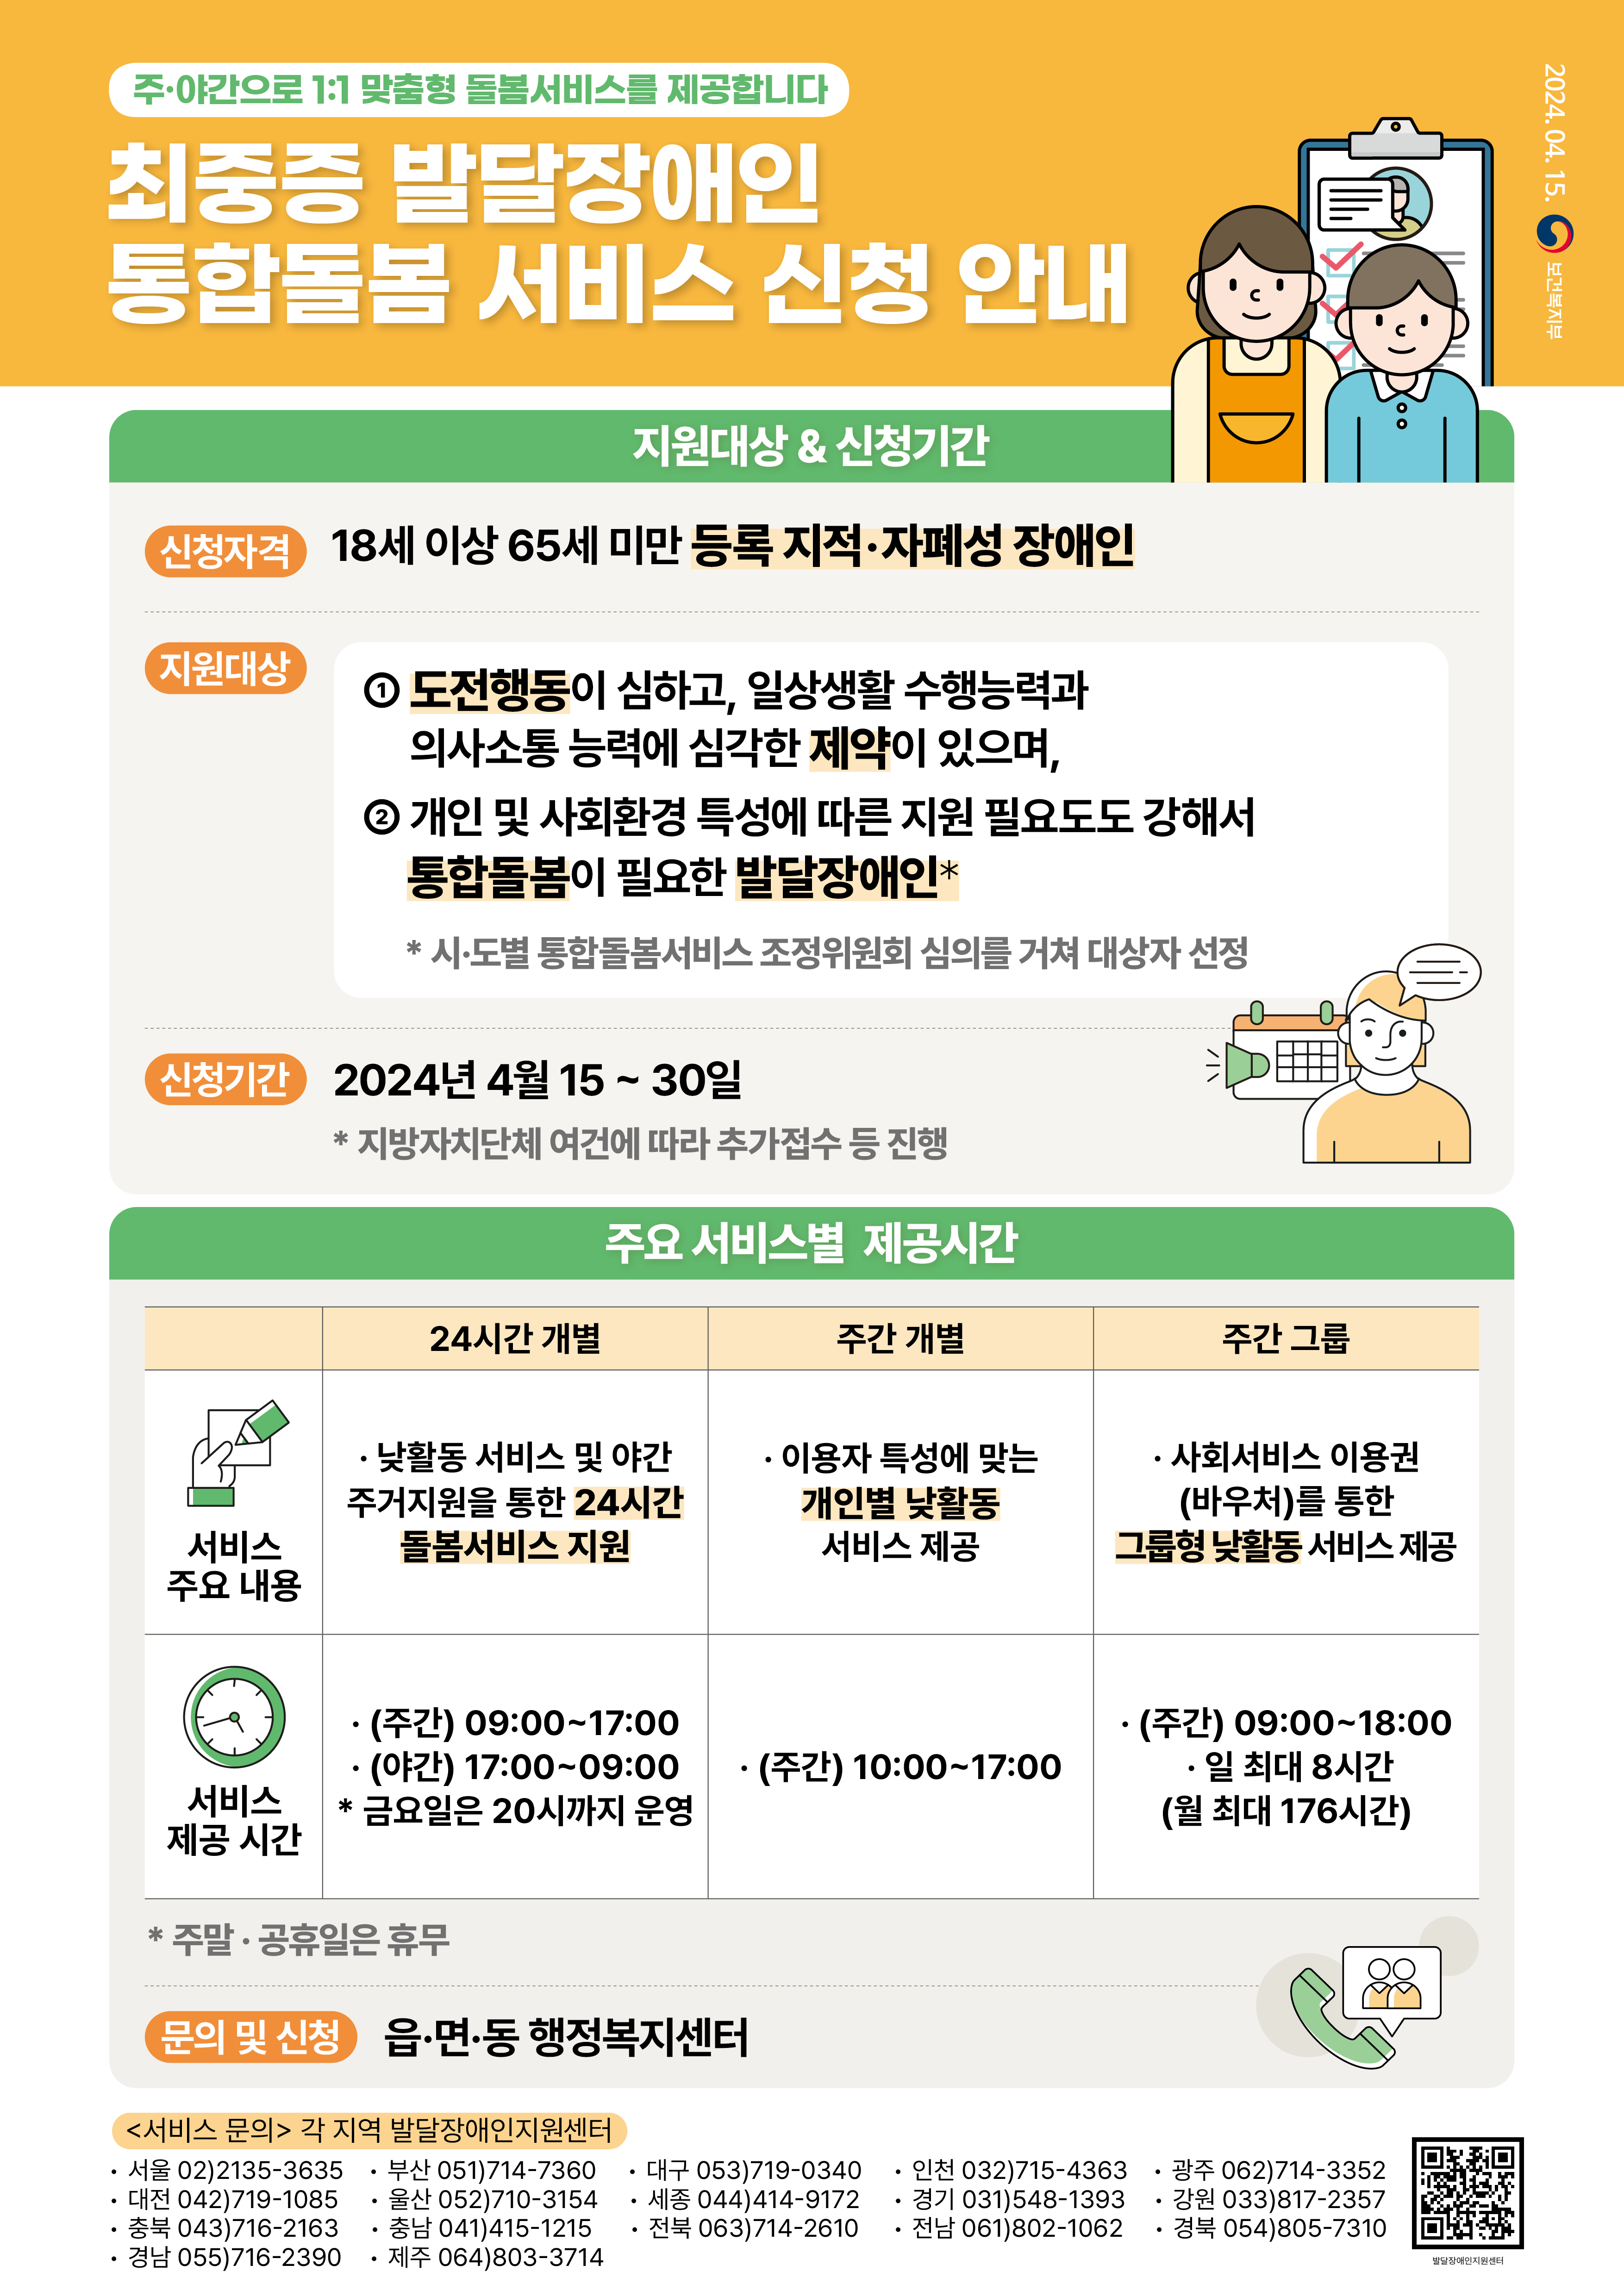 4.19. 복지위생국 보도자료_장애인복지과(2).jpg